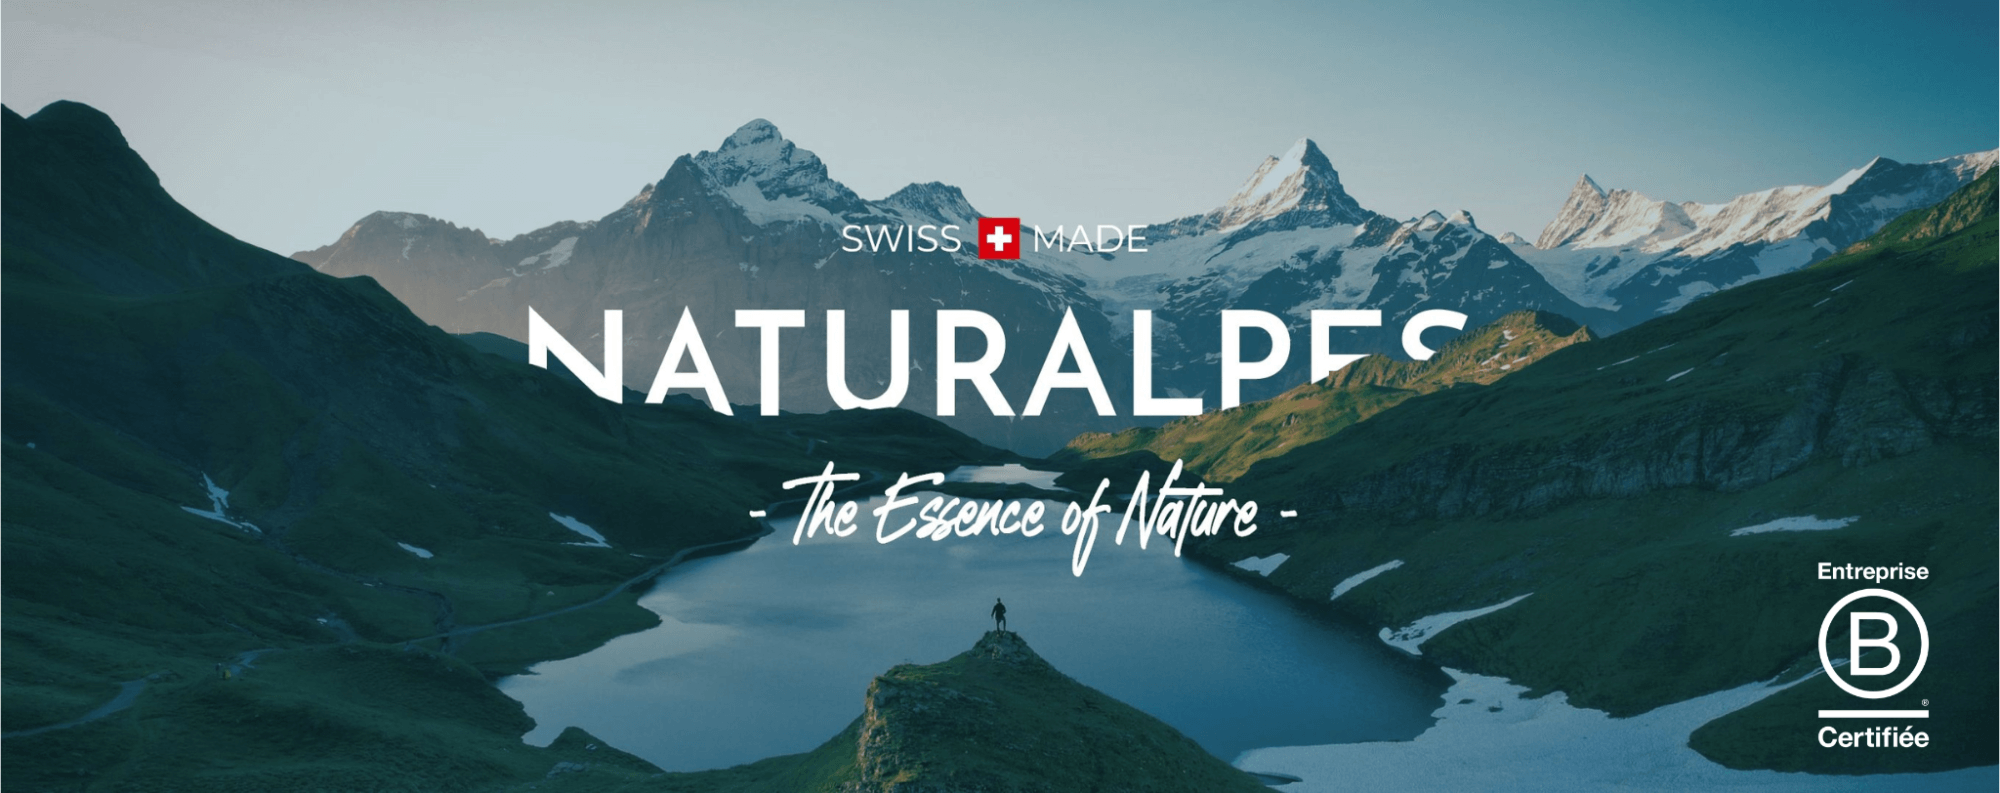 Welcome to Naturalpes Switzerland